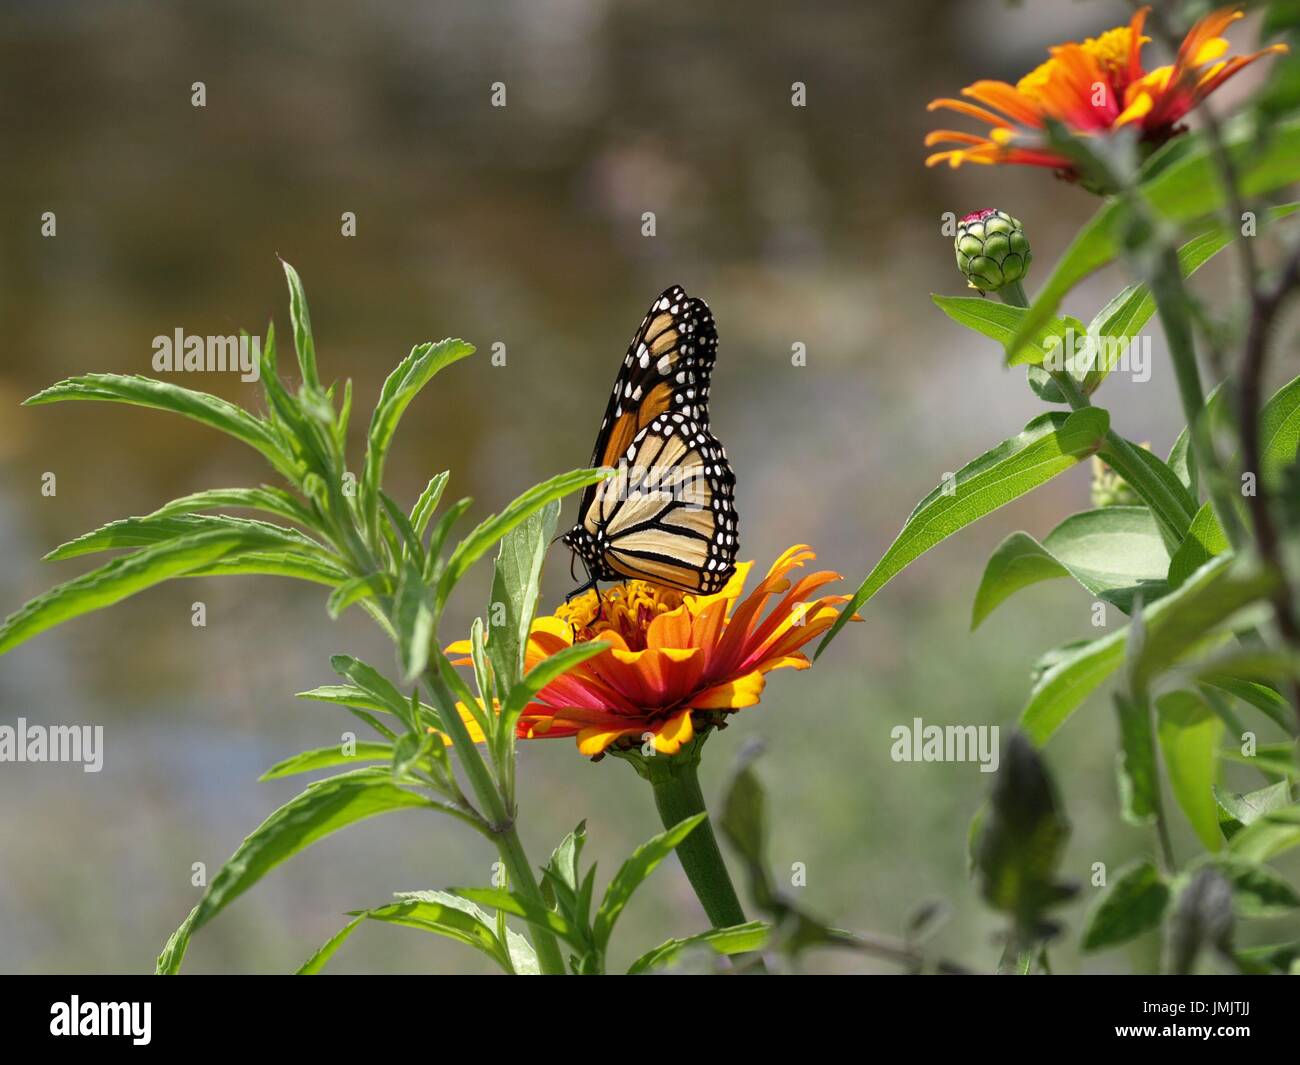 Monarchfalter auf gelb orange Blume im grünen Laub Stockfoto